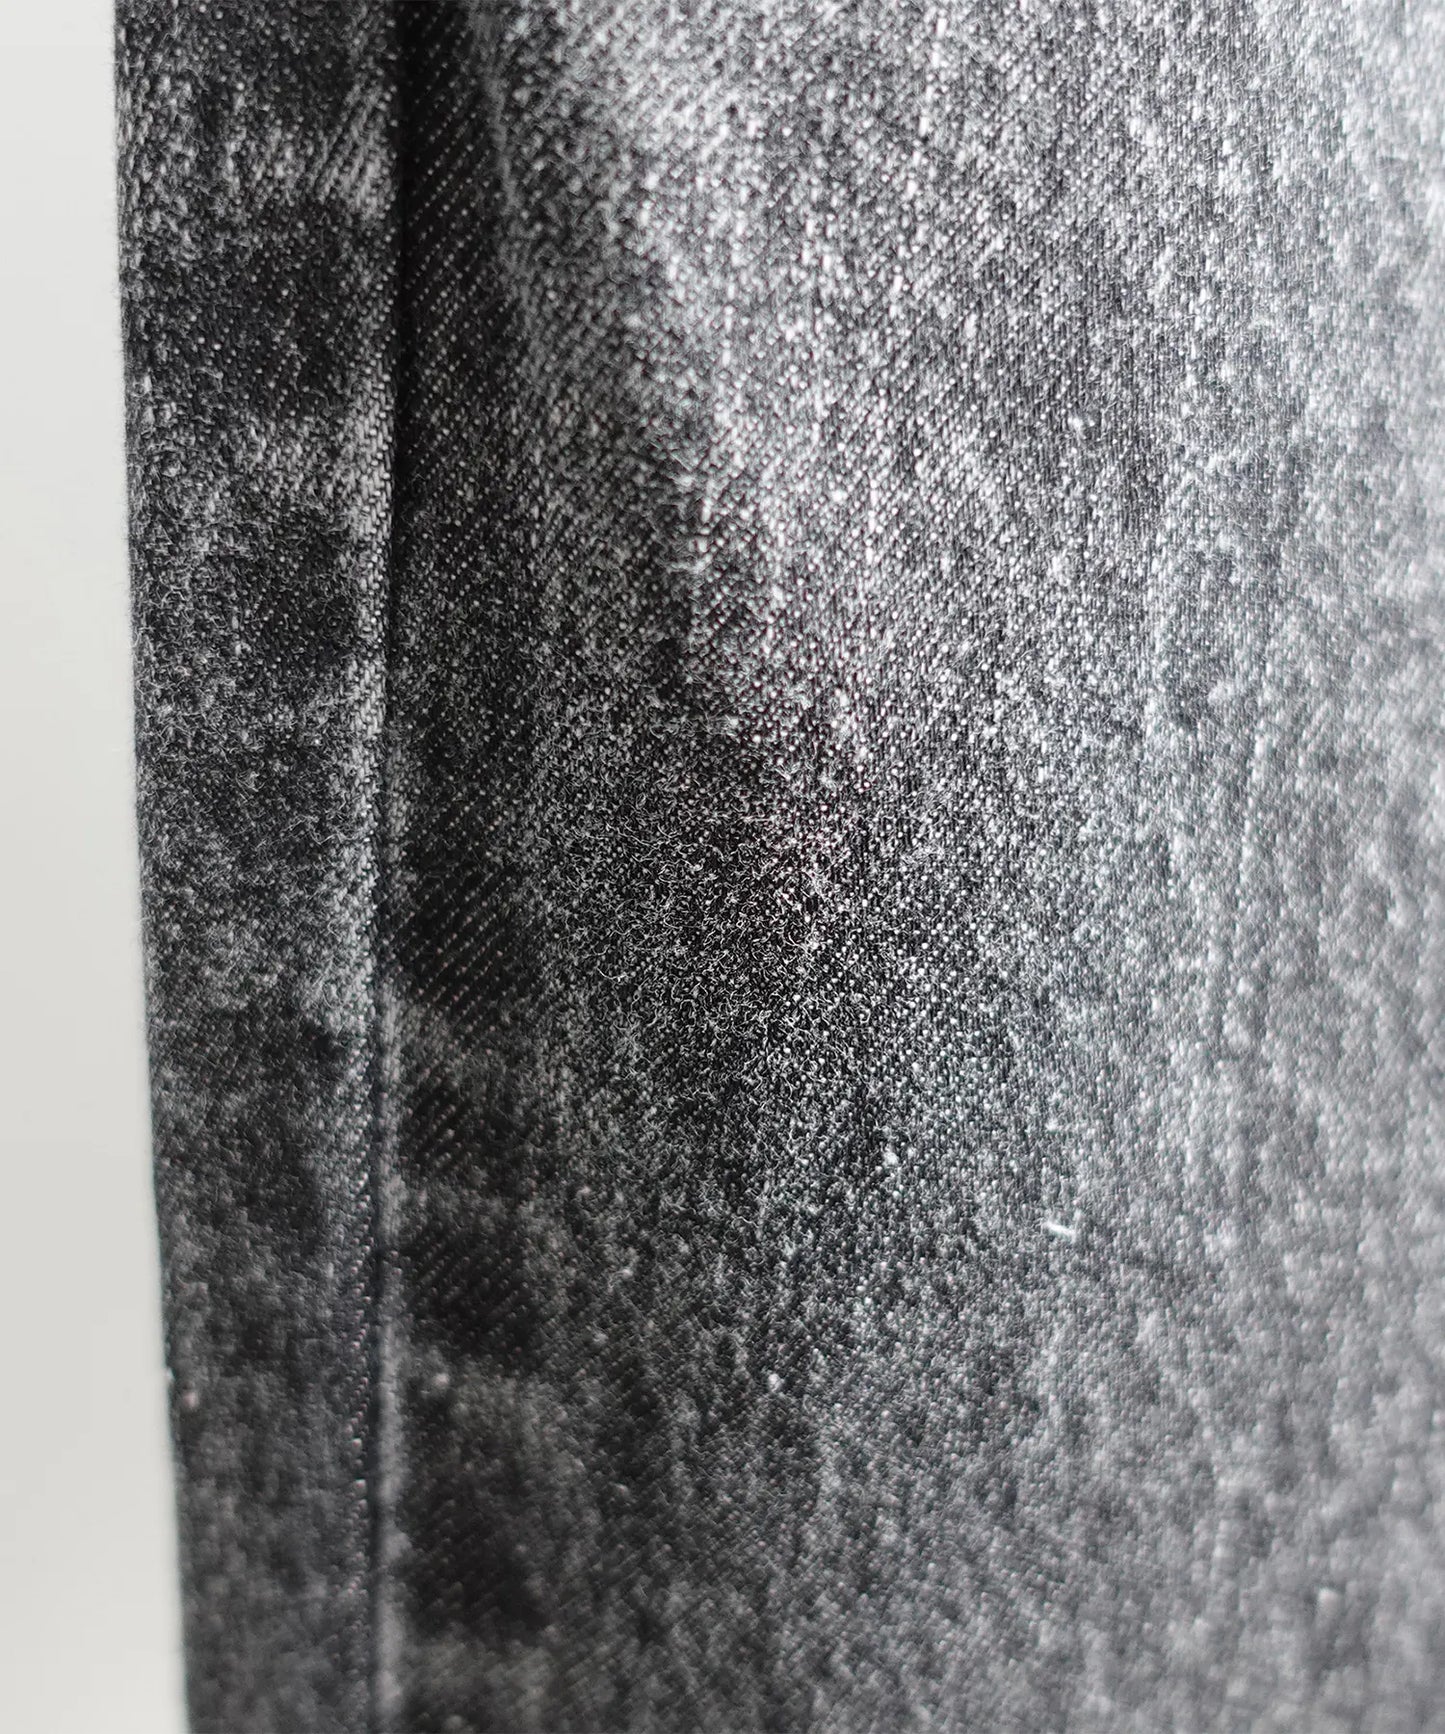 【環保材質】OG DENIM CREW PANTS 有機棉漂白牛仔布 全季材質【100-145cm】